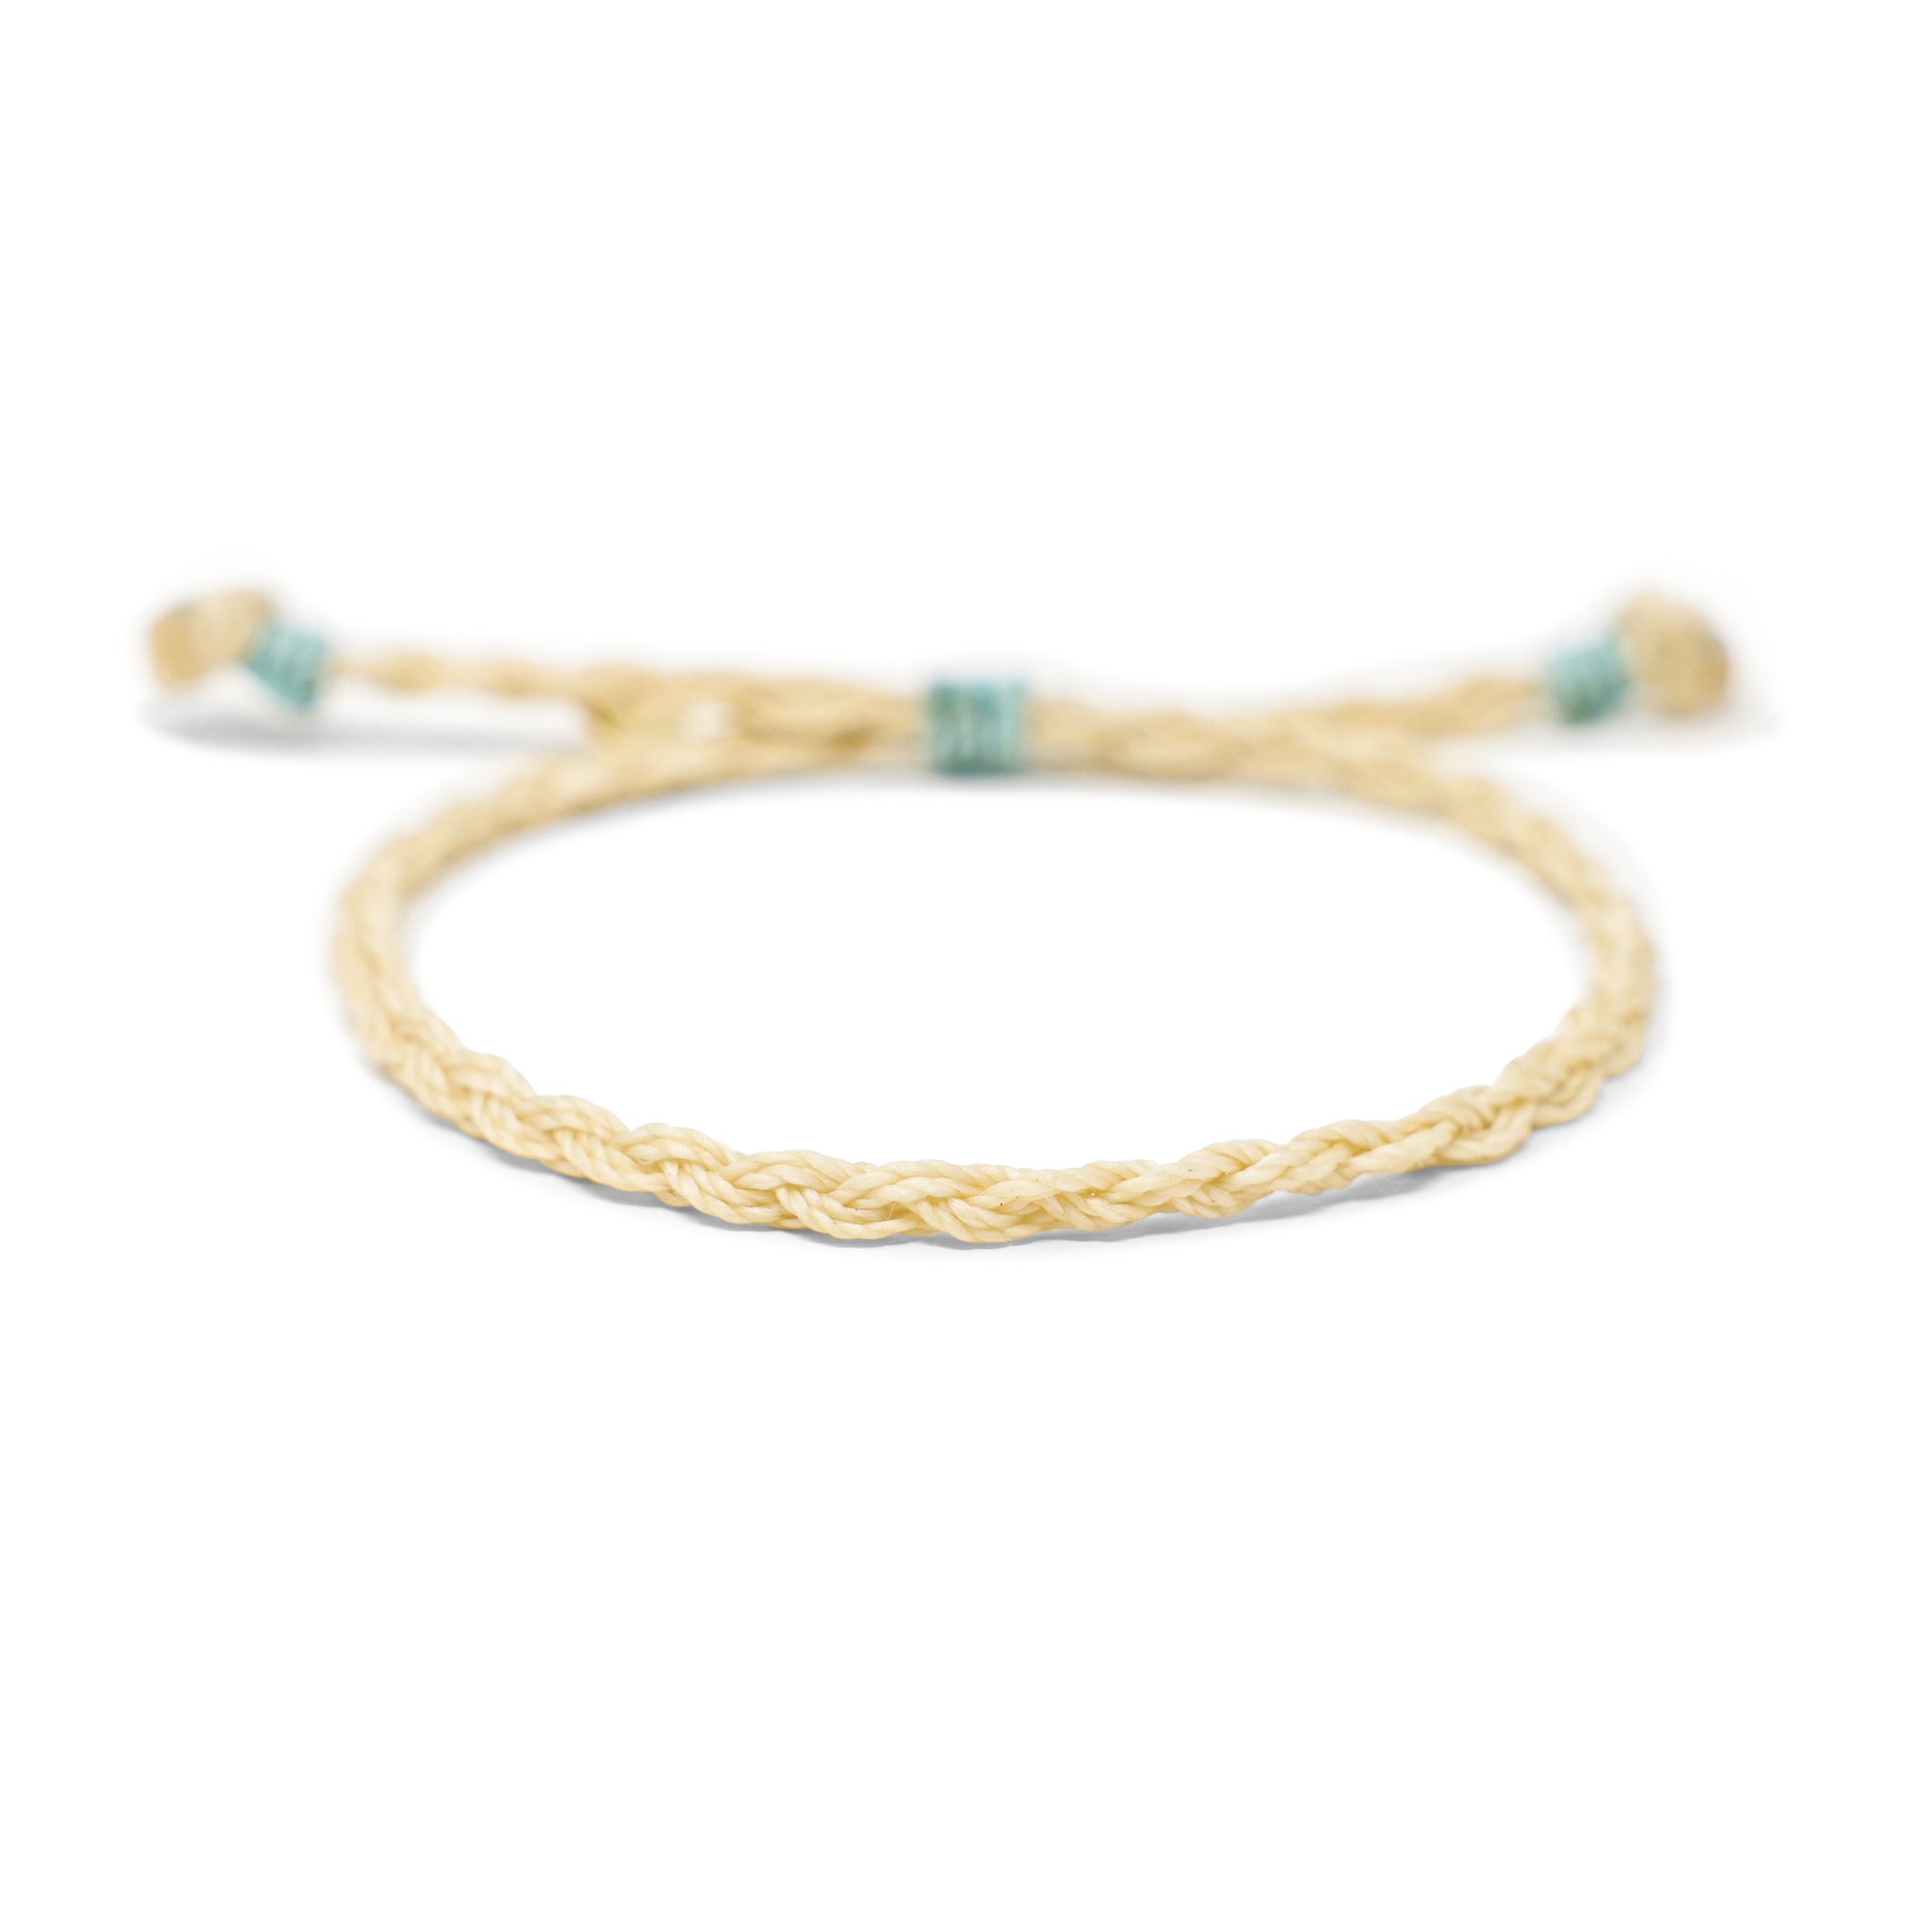 Men's Rope Braid Bracelet- Cream w/ Aqua Details